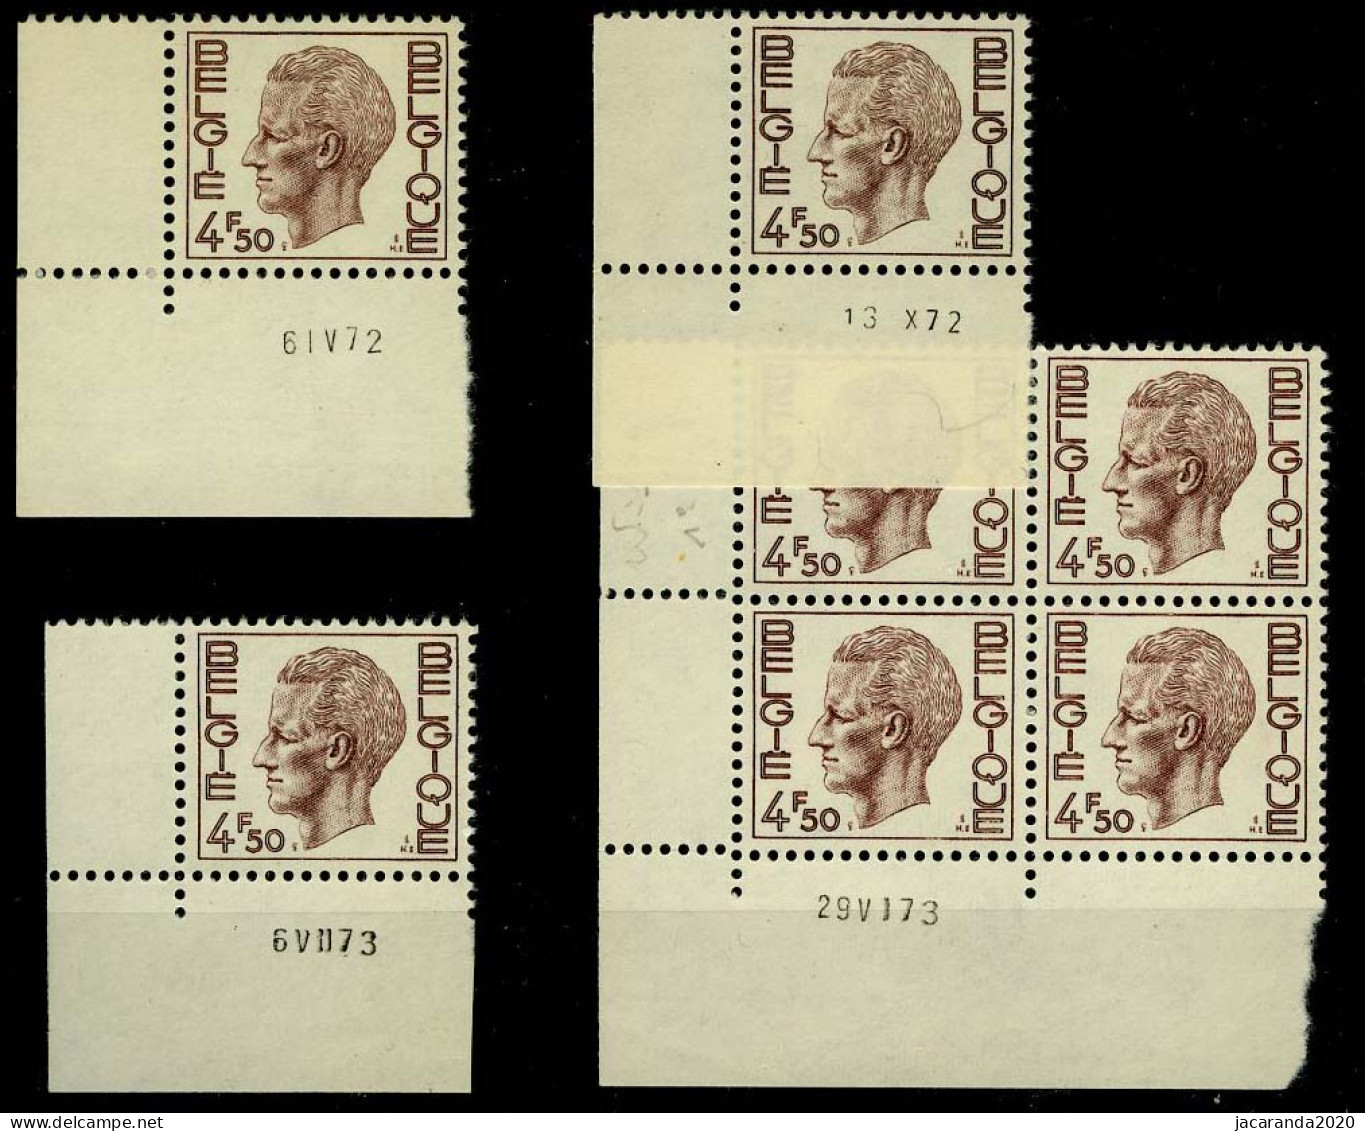 België 1644 - Koning Boudewijn - Type Elström - 4,50 - 4 Verschillende Datums 1972-1973 - Dated Corners